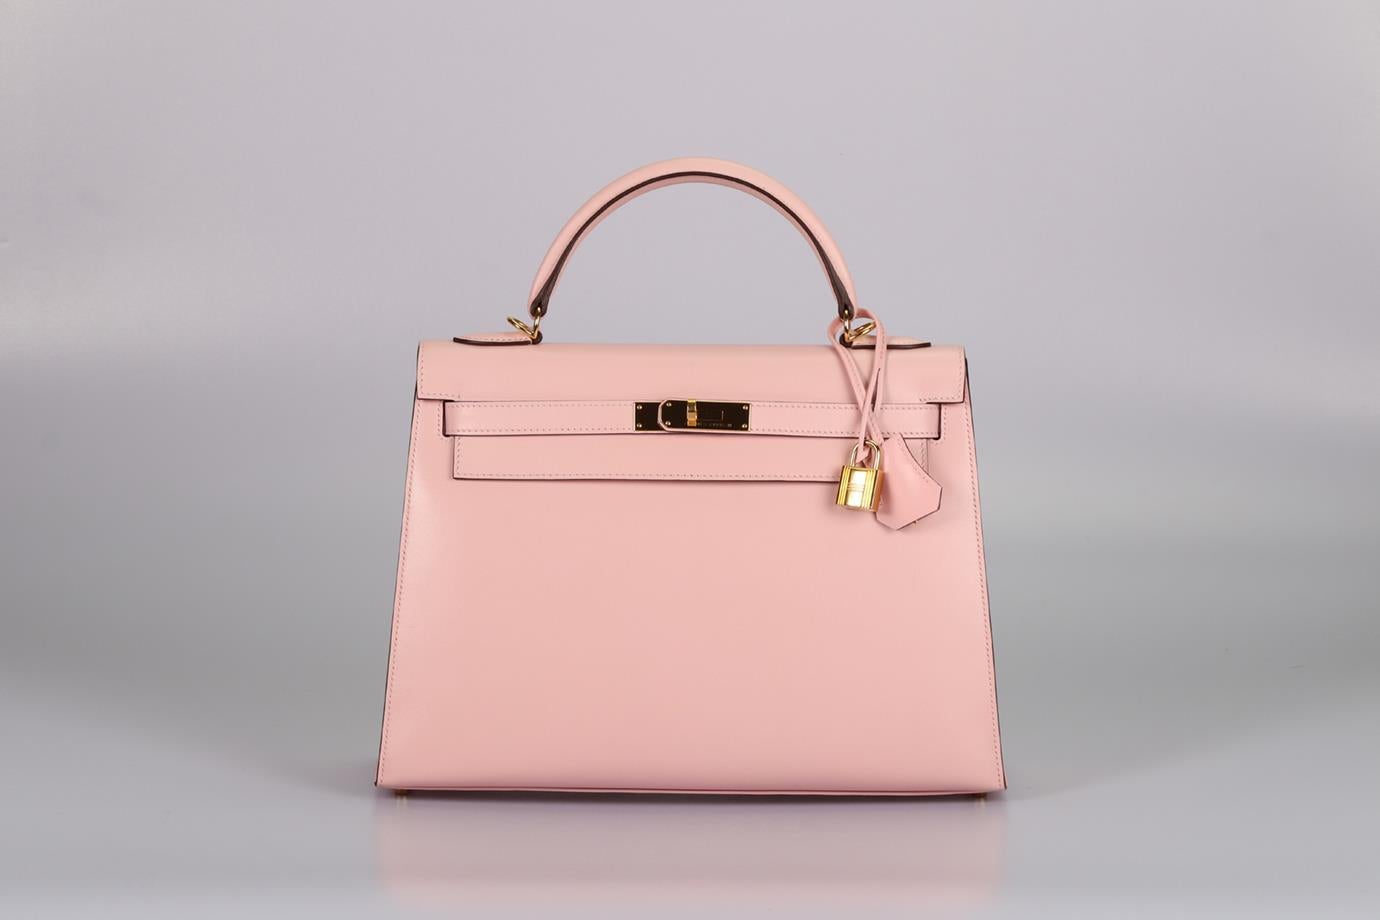 <ul>
<li>Hermès 2017 Kelly Ii Sellier 32 Cm Box Leather Bag.</li>
<li>Pink.</li>
<li>Twist lock fastening - Front.</li>
<li>Comes with - Key, lock and clochette.</li>
<li>Model: Kelly 32.</li>
<li>Made in France, this beautiful 2017 Hermès ‘Kelly II